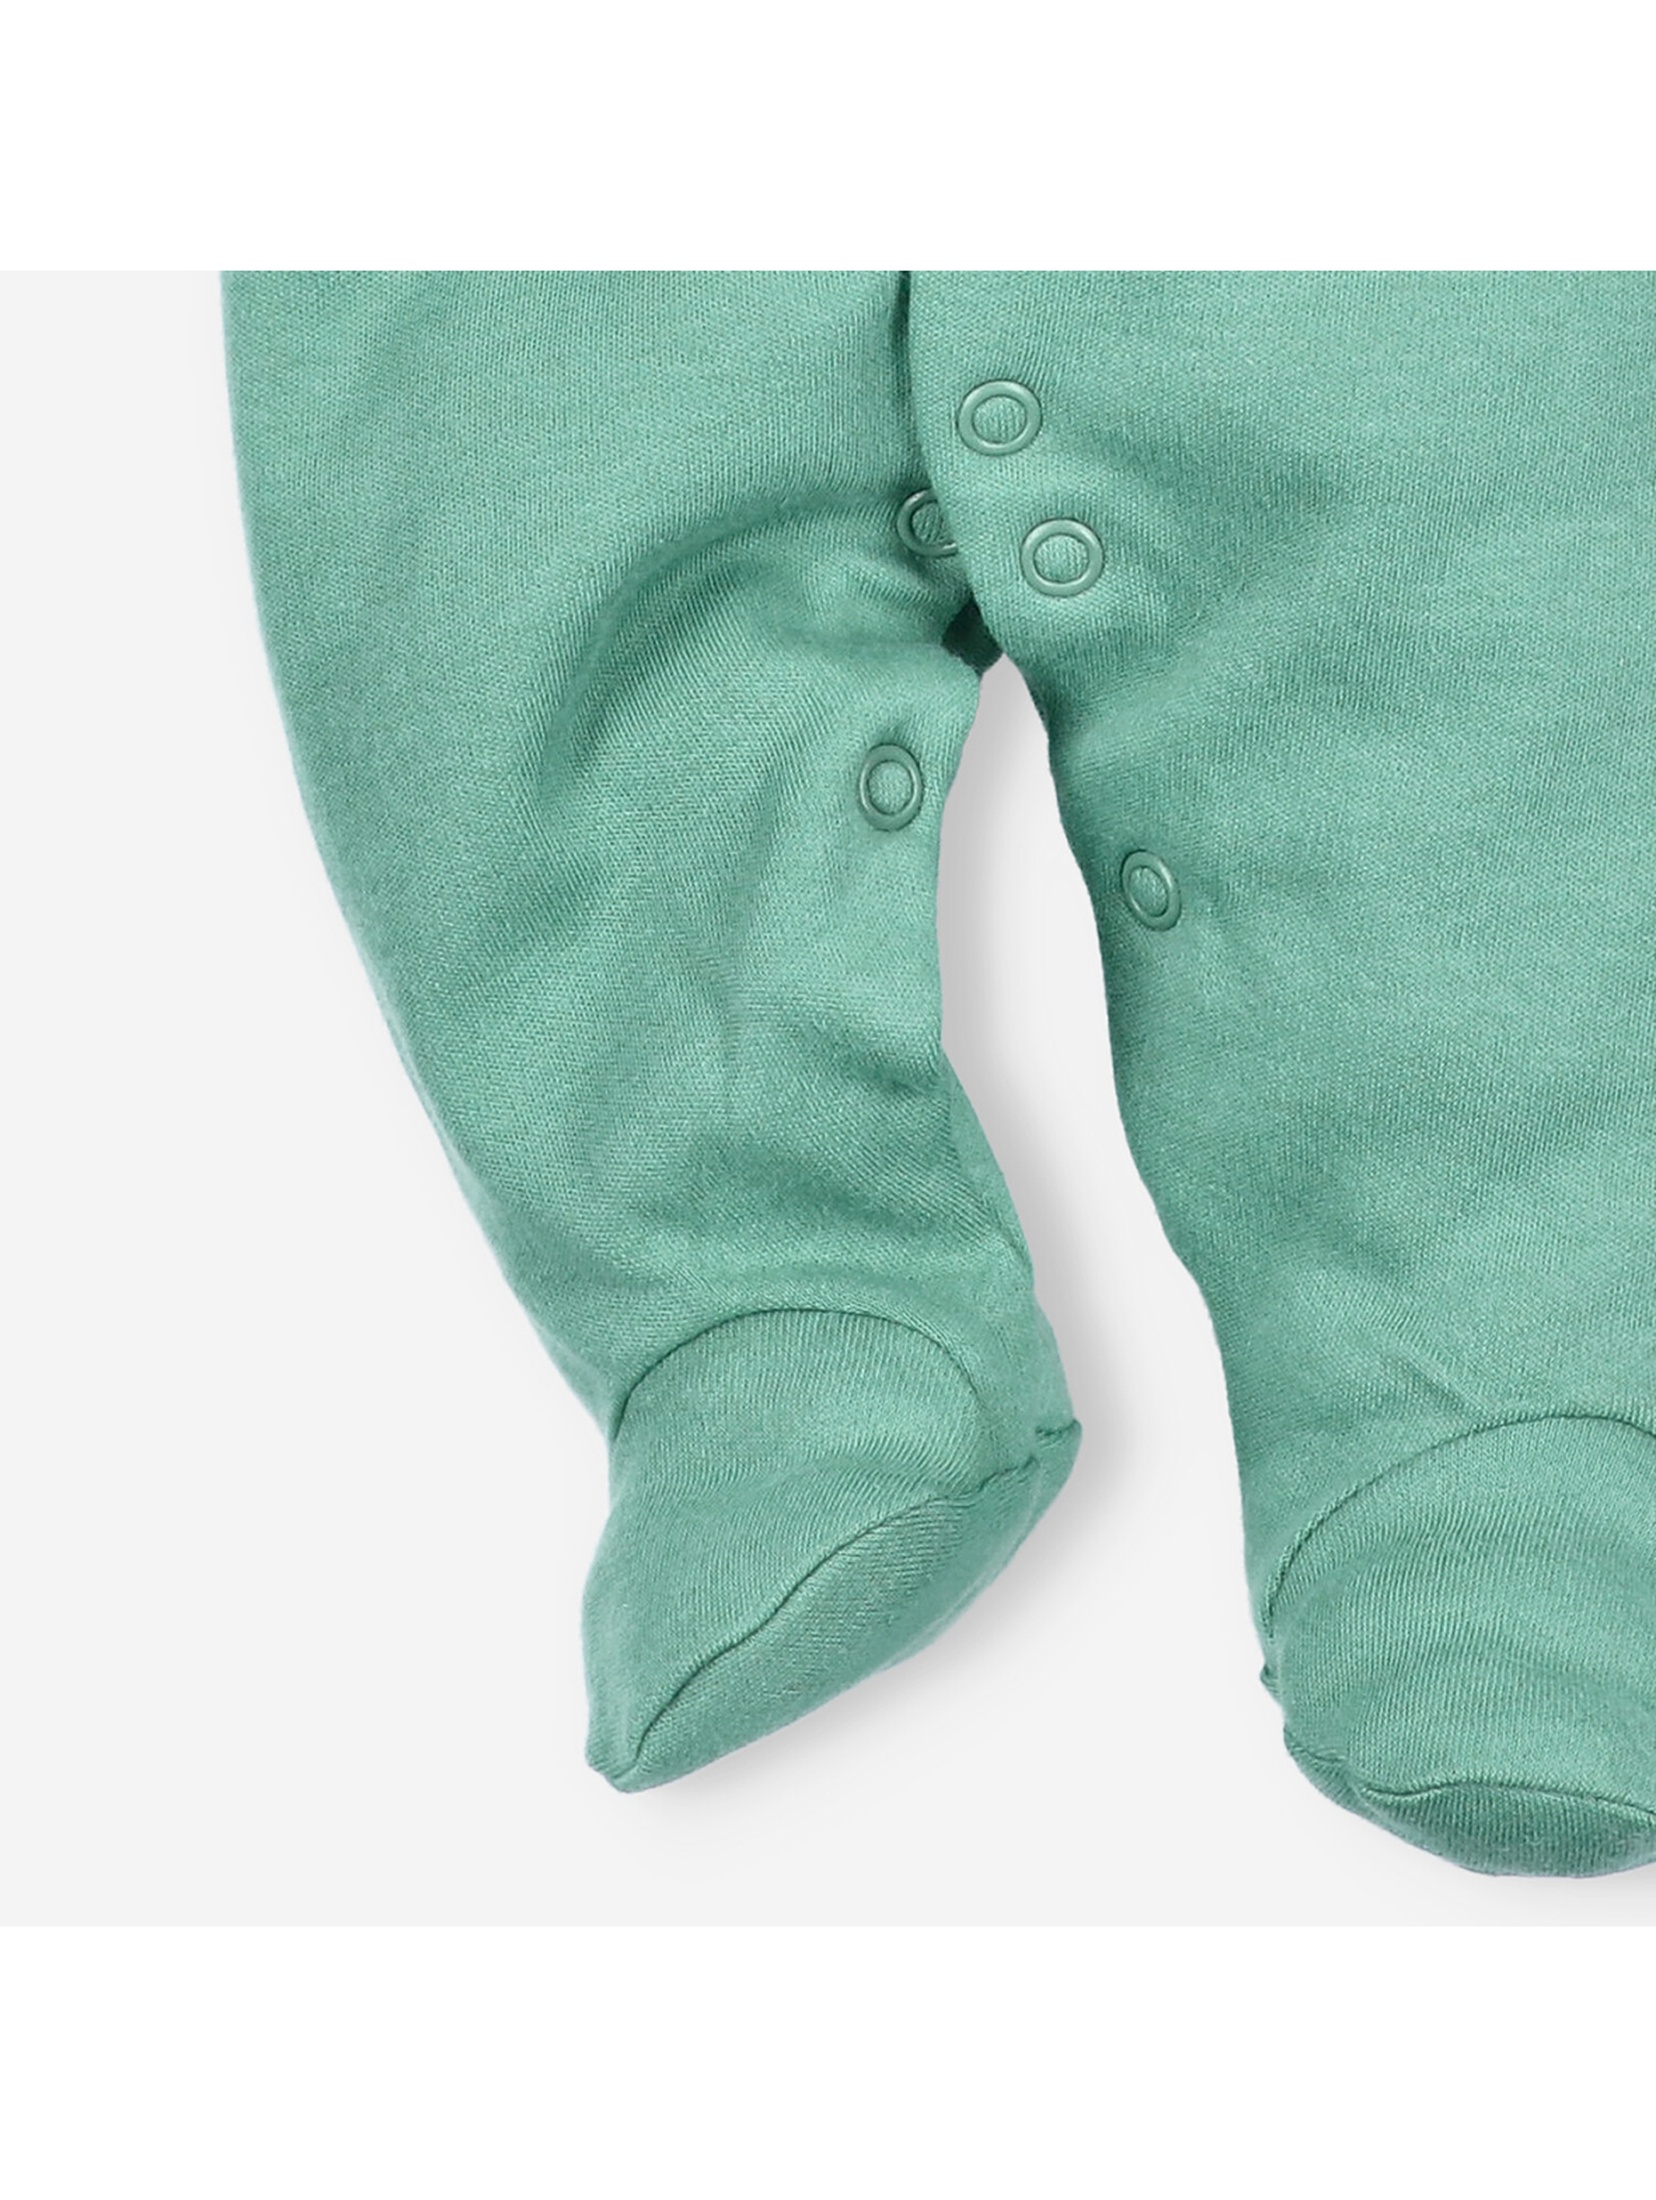 Pajac niemowlęcy z bawełny organicznej zielony